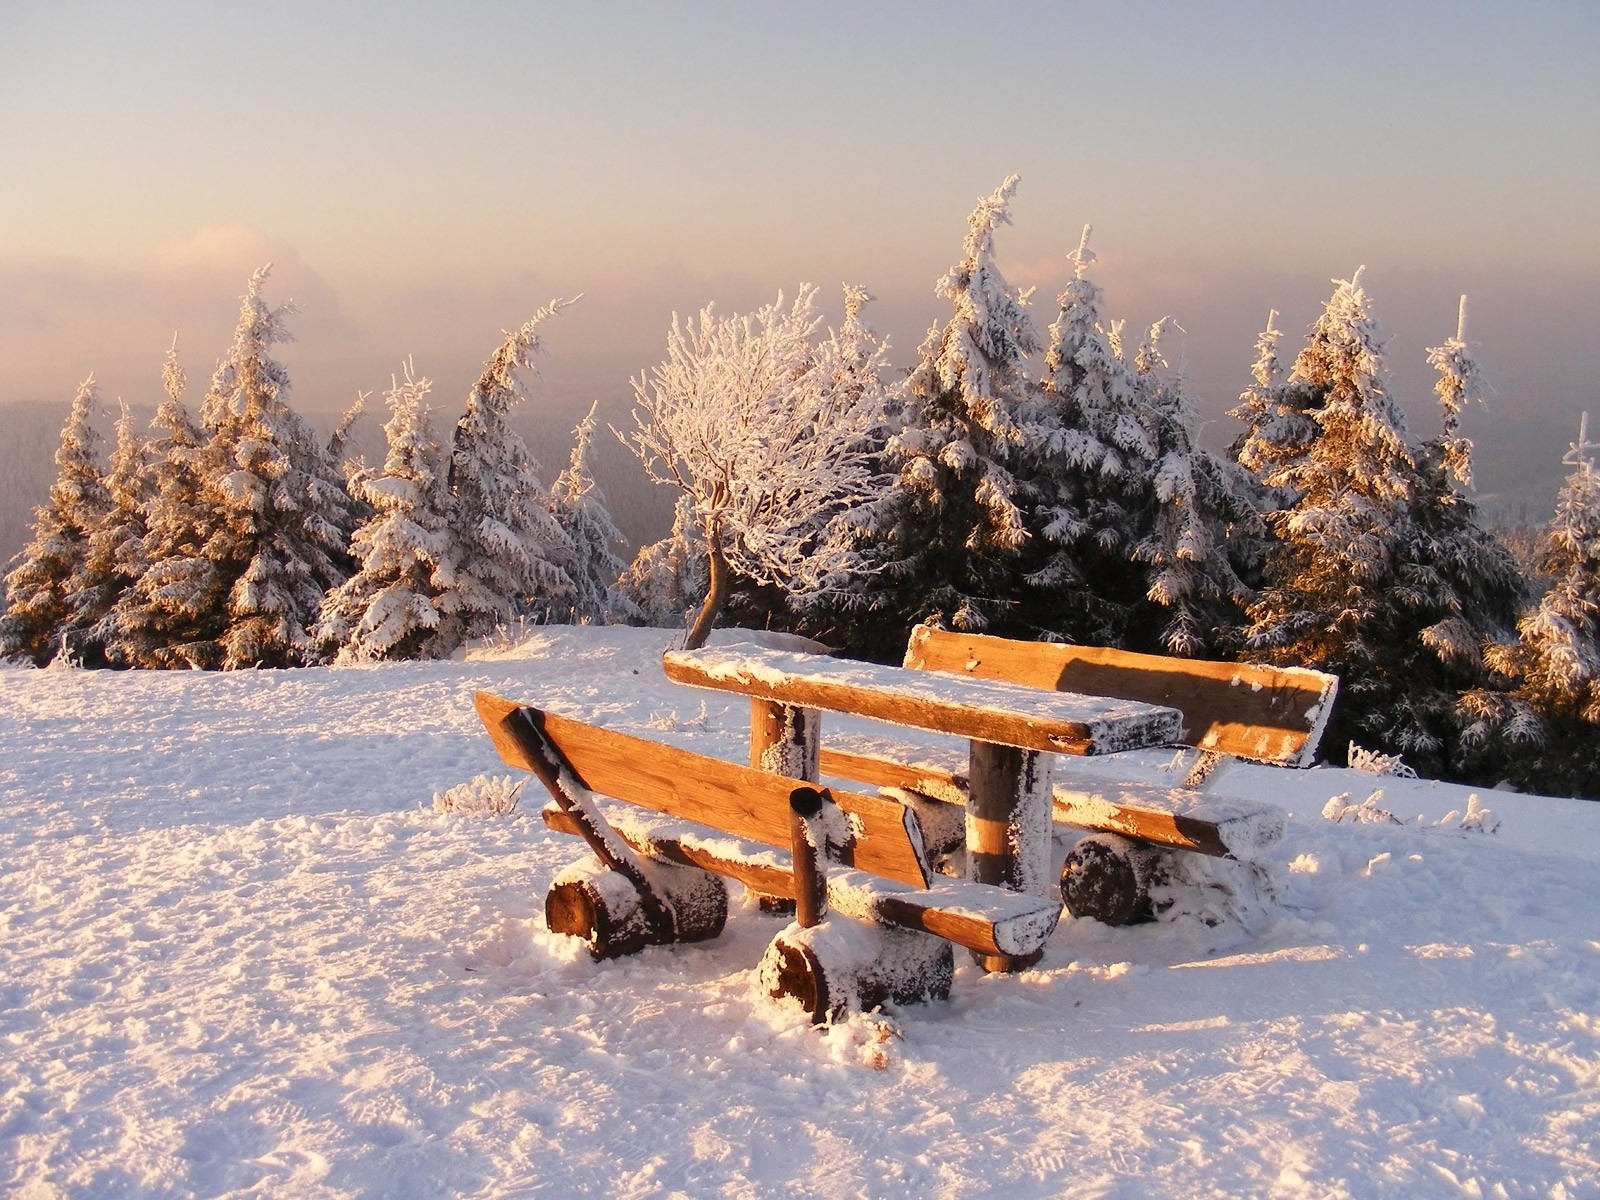 лавочка, столик, у леса, зима, снег HD фото картинки, обои рабочий стол